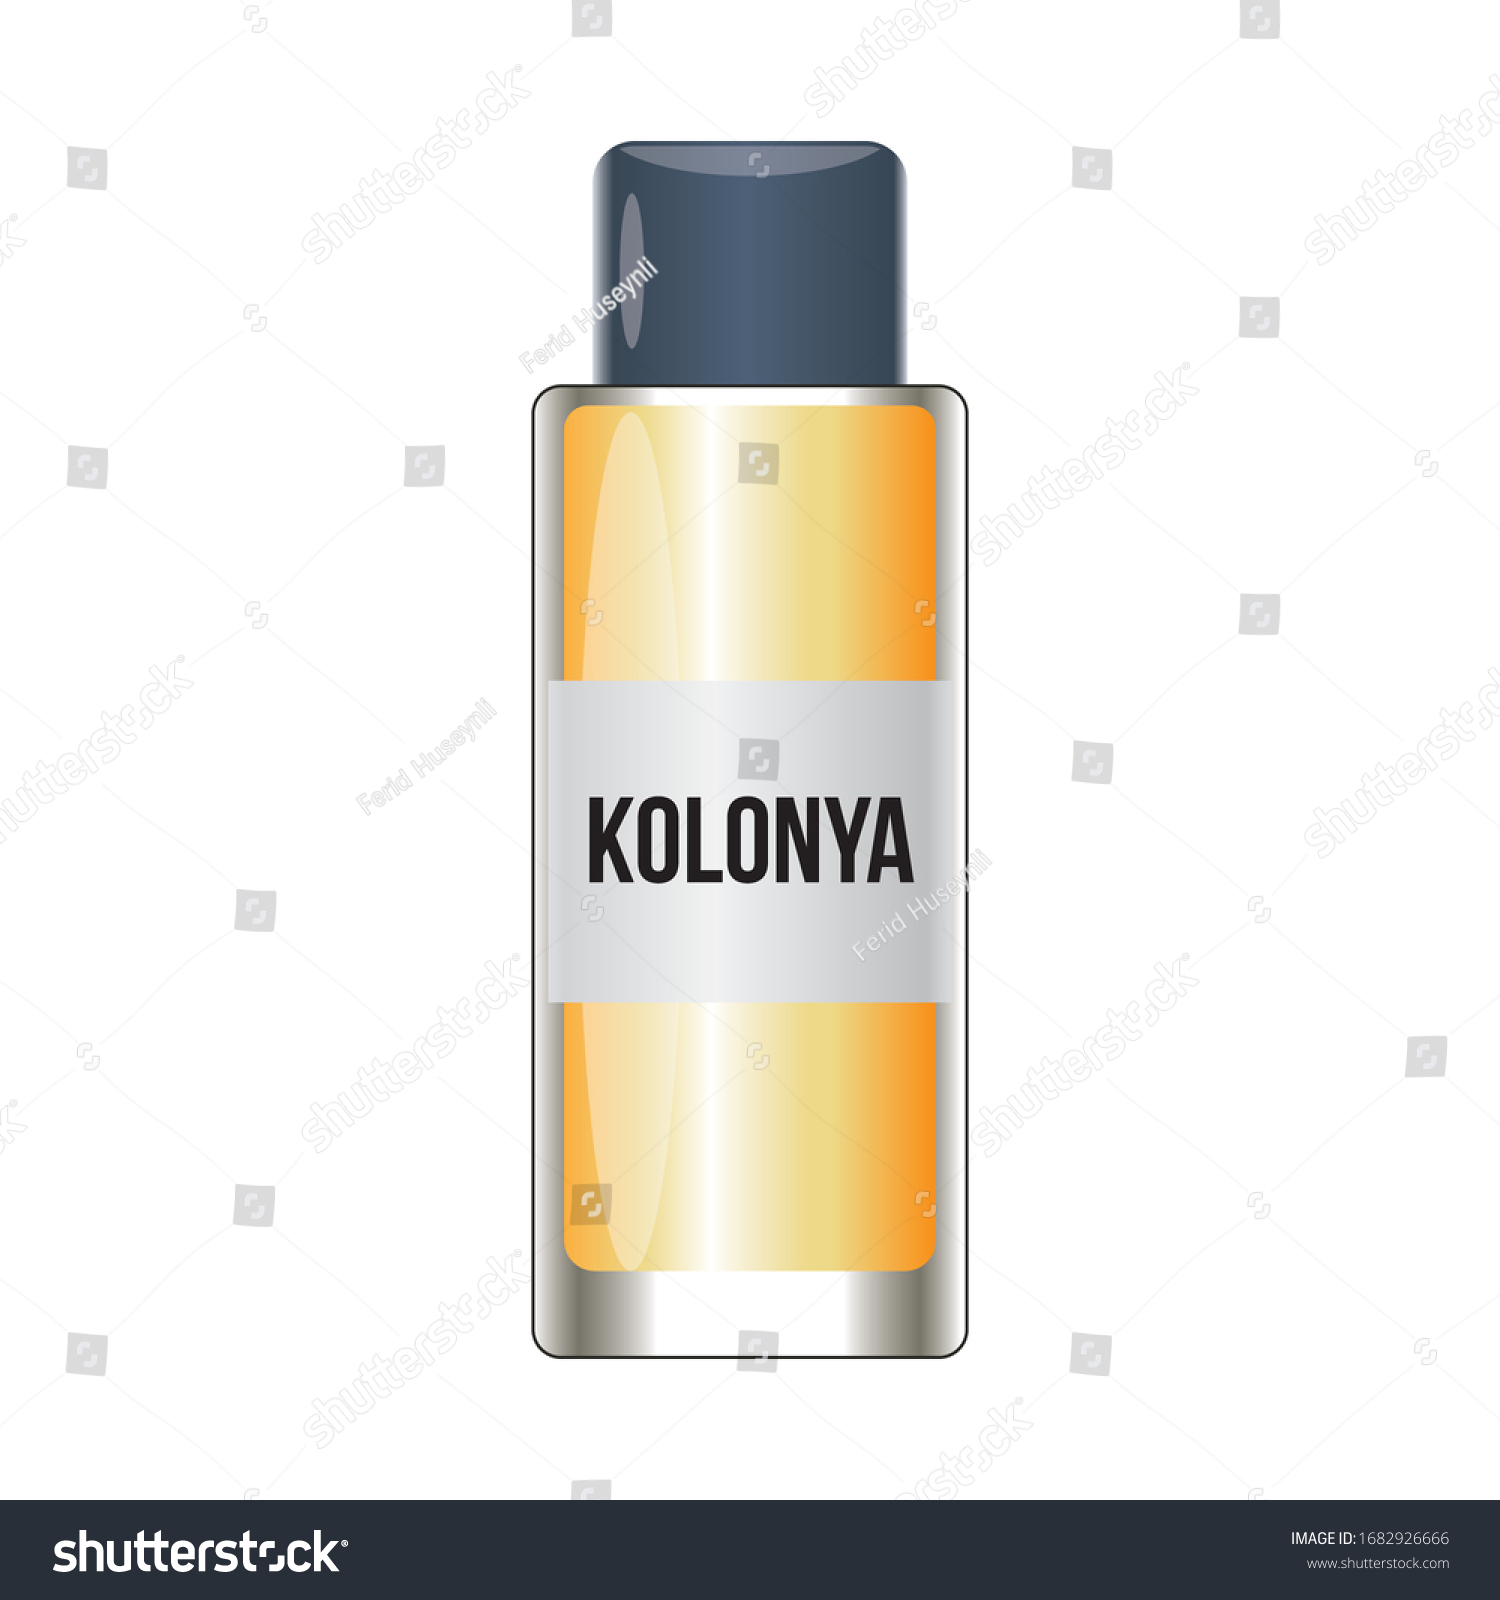 SVG of Lemon and tobacco cologne bottle vector, lemon kolonya for coronavirus vector illustration, isolated on white background svg